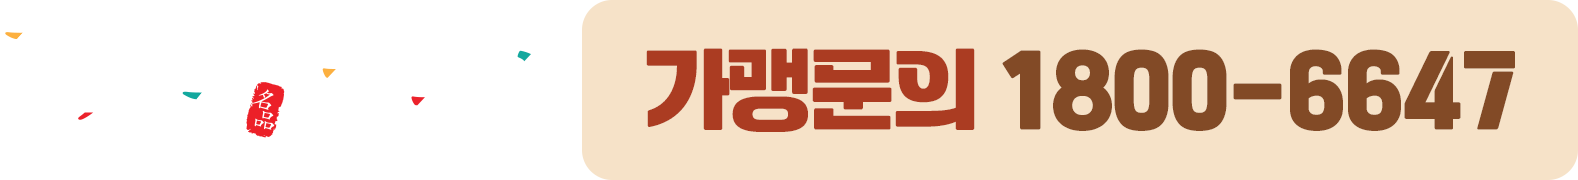 장삼죽&해물밥 가맹문의 1800-6647